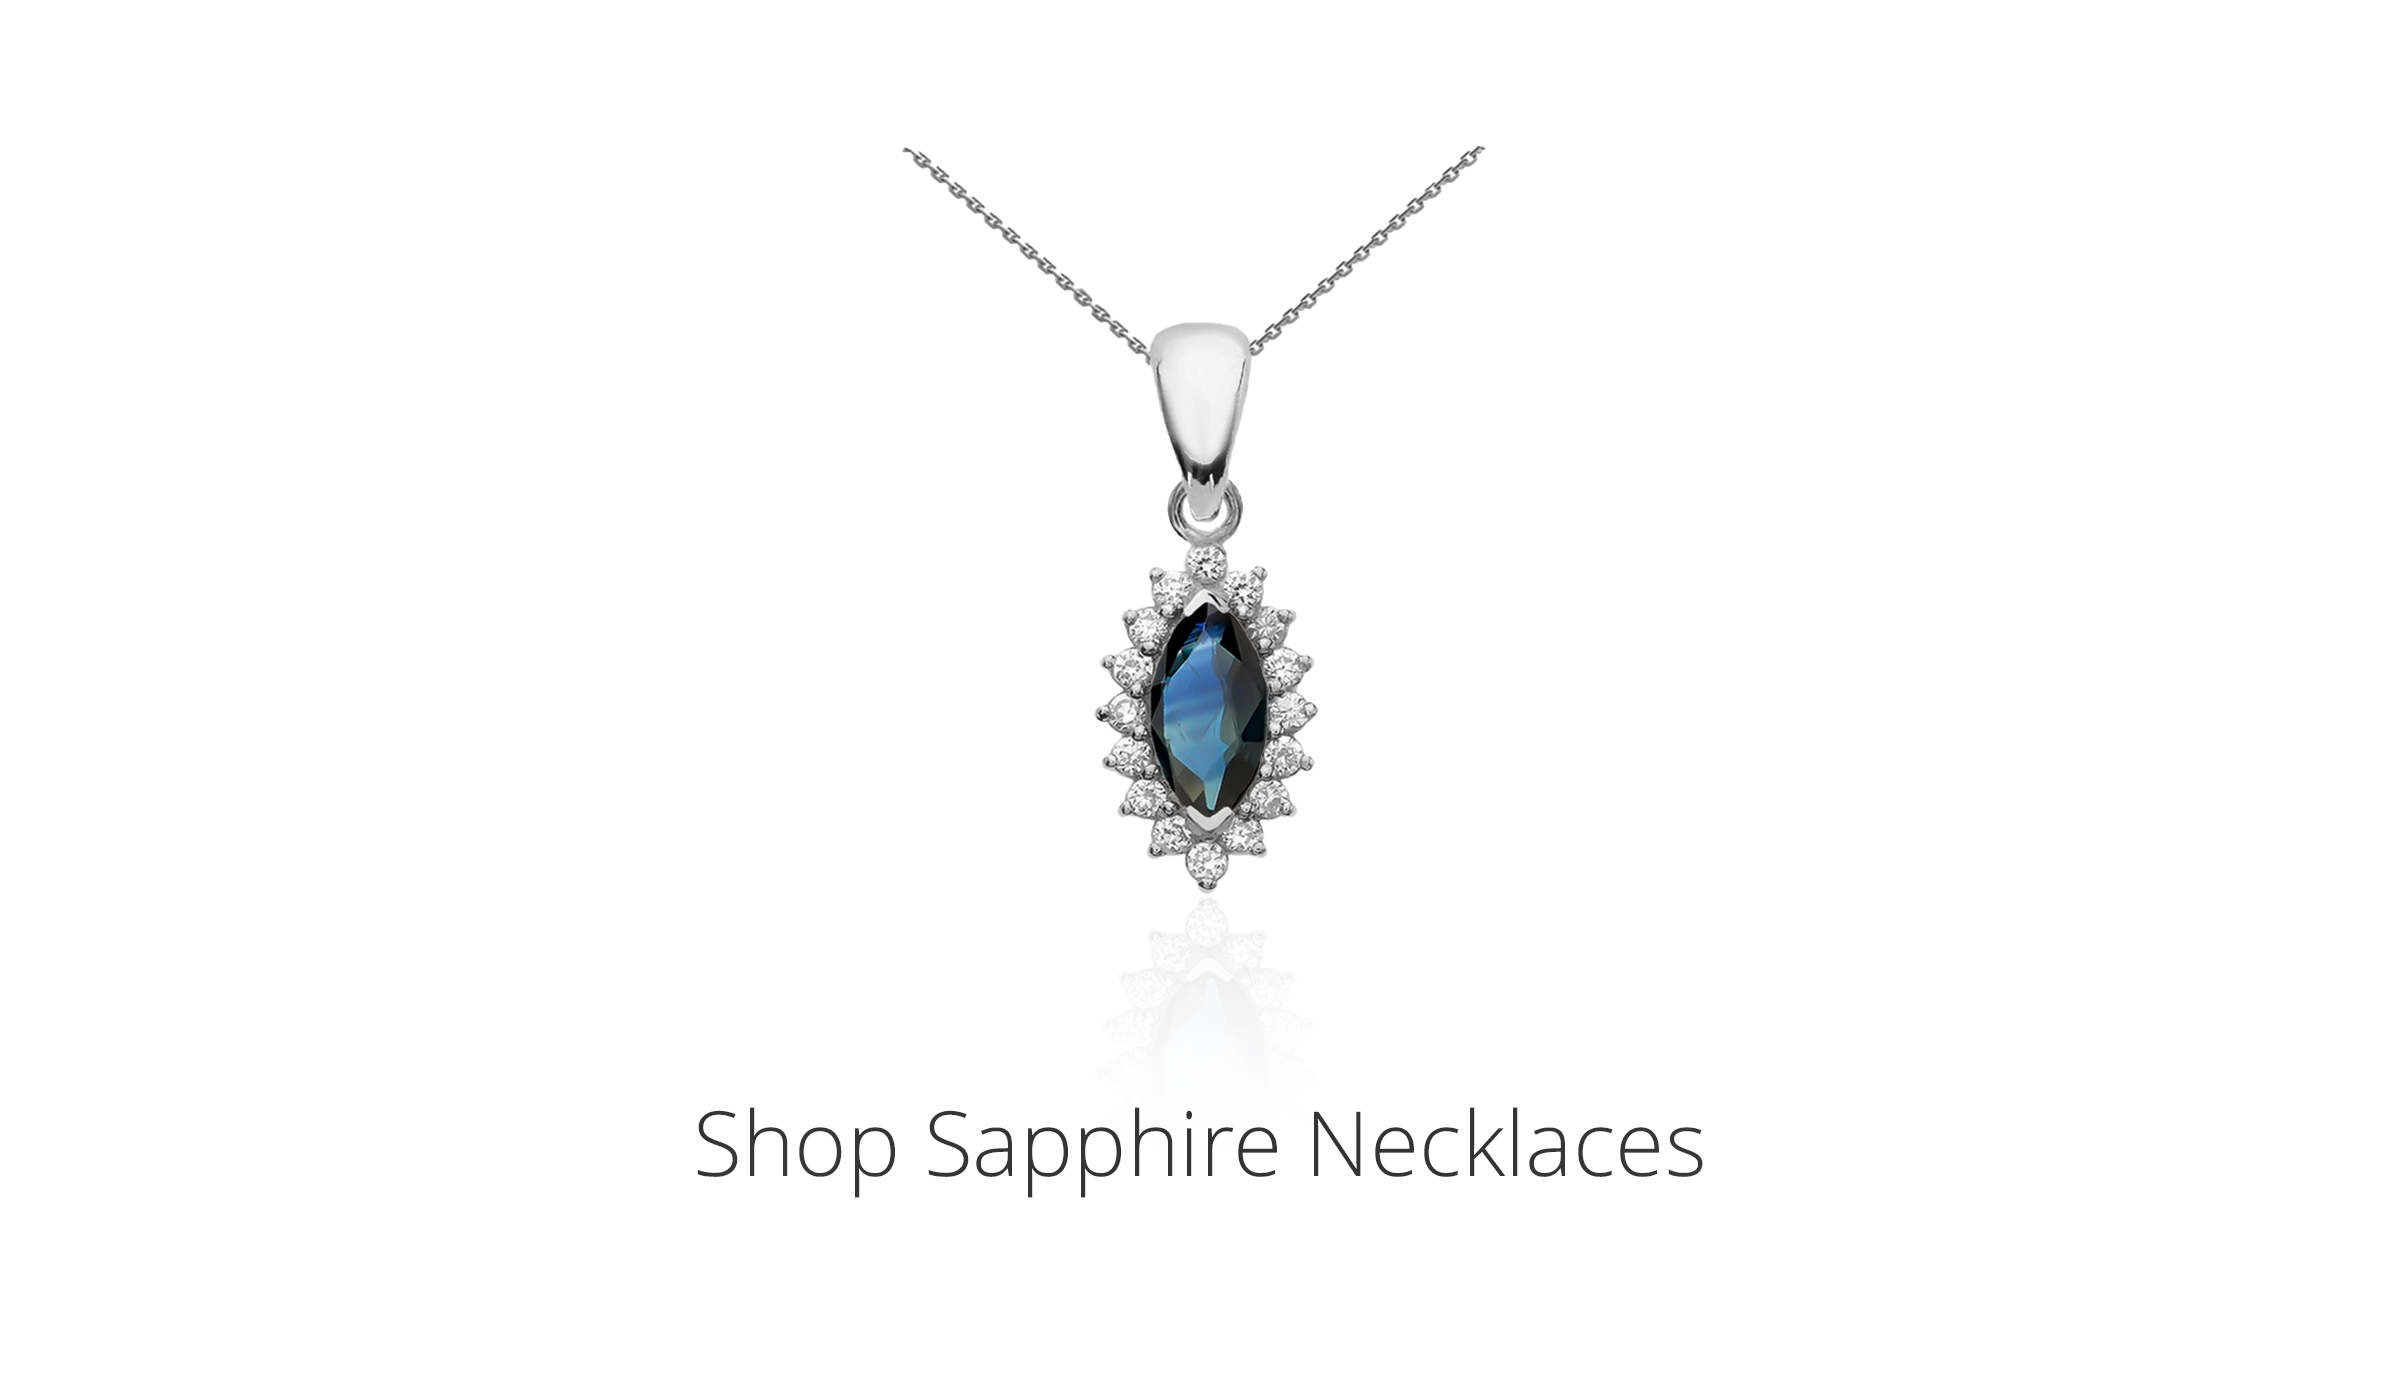 Shop Sapphire Necklaces